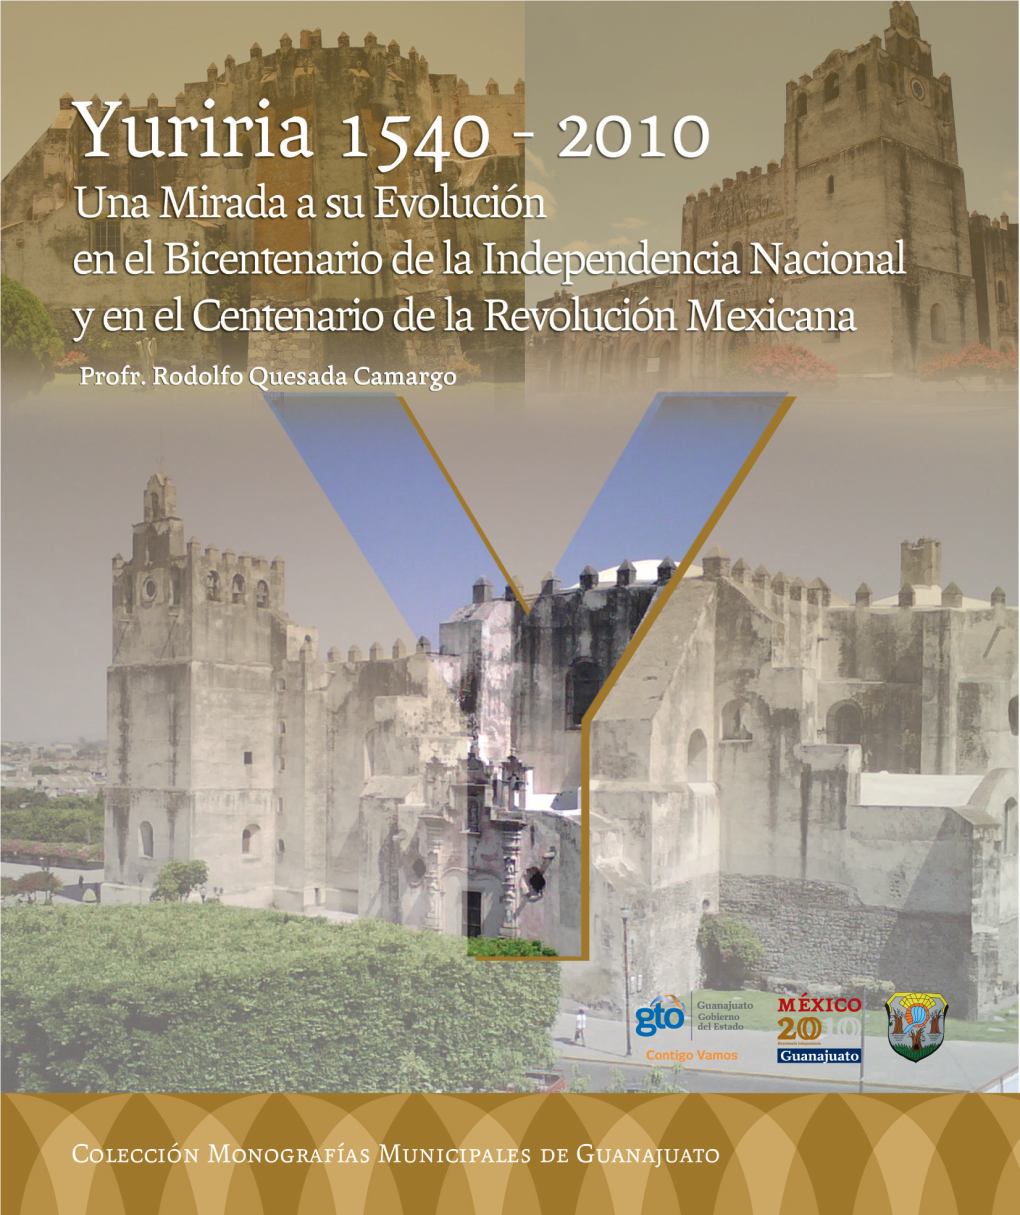 2010 CEOCB Monografia Yuriria.Pdf